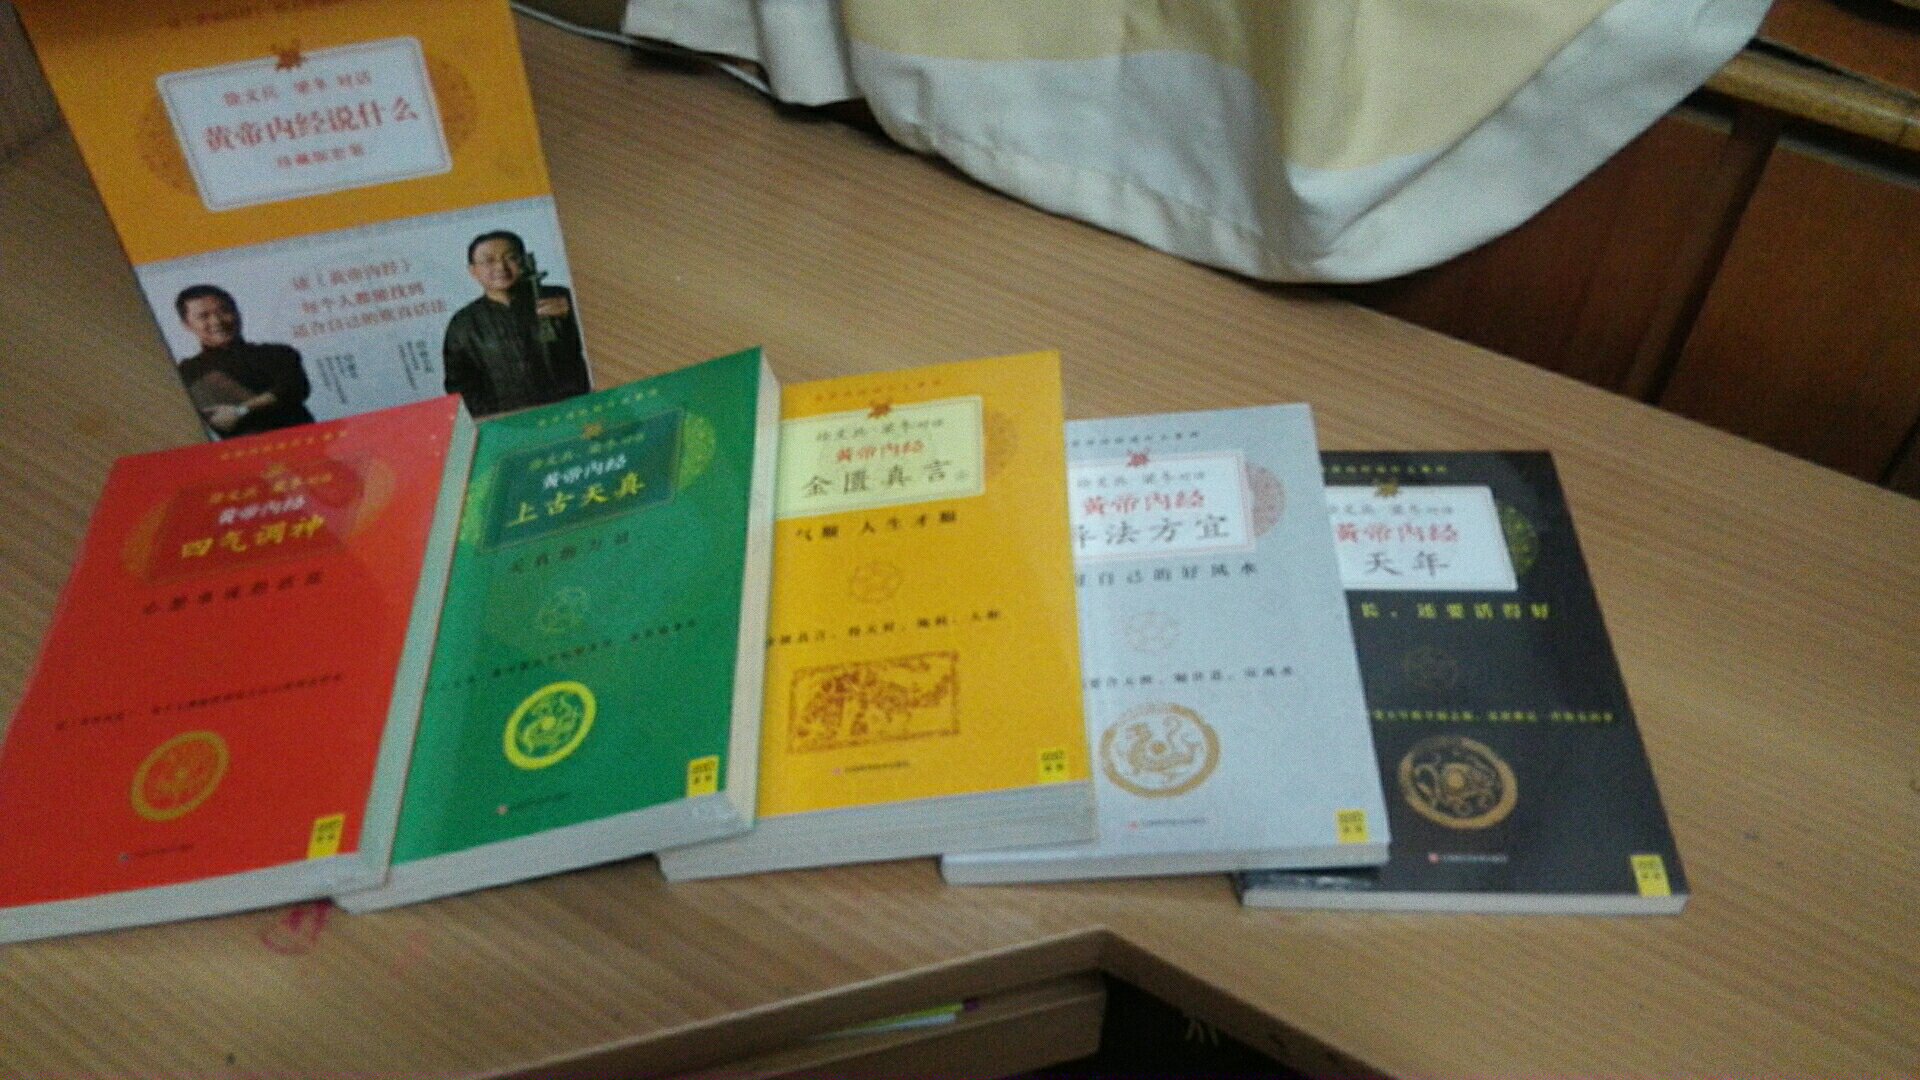 非常喜欢徐文兵老师的讲课，通俗易懂！书籍包装精美质量非常不错！